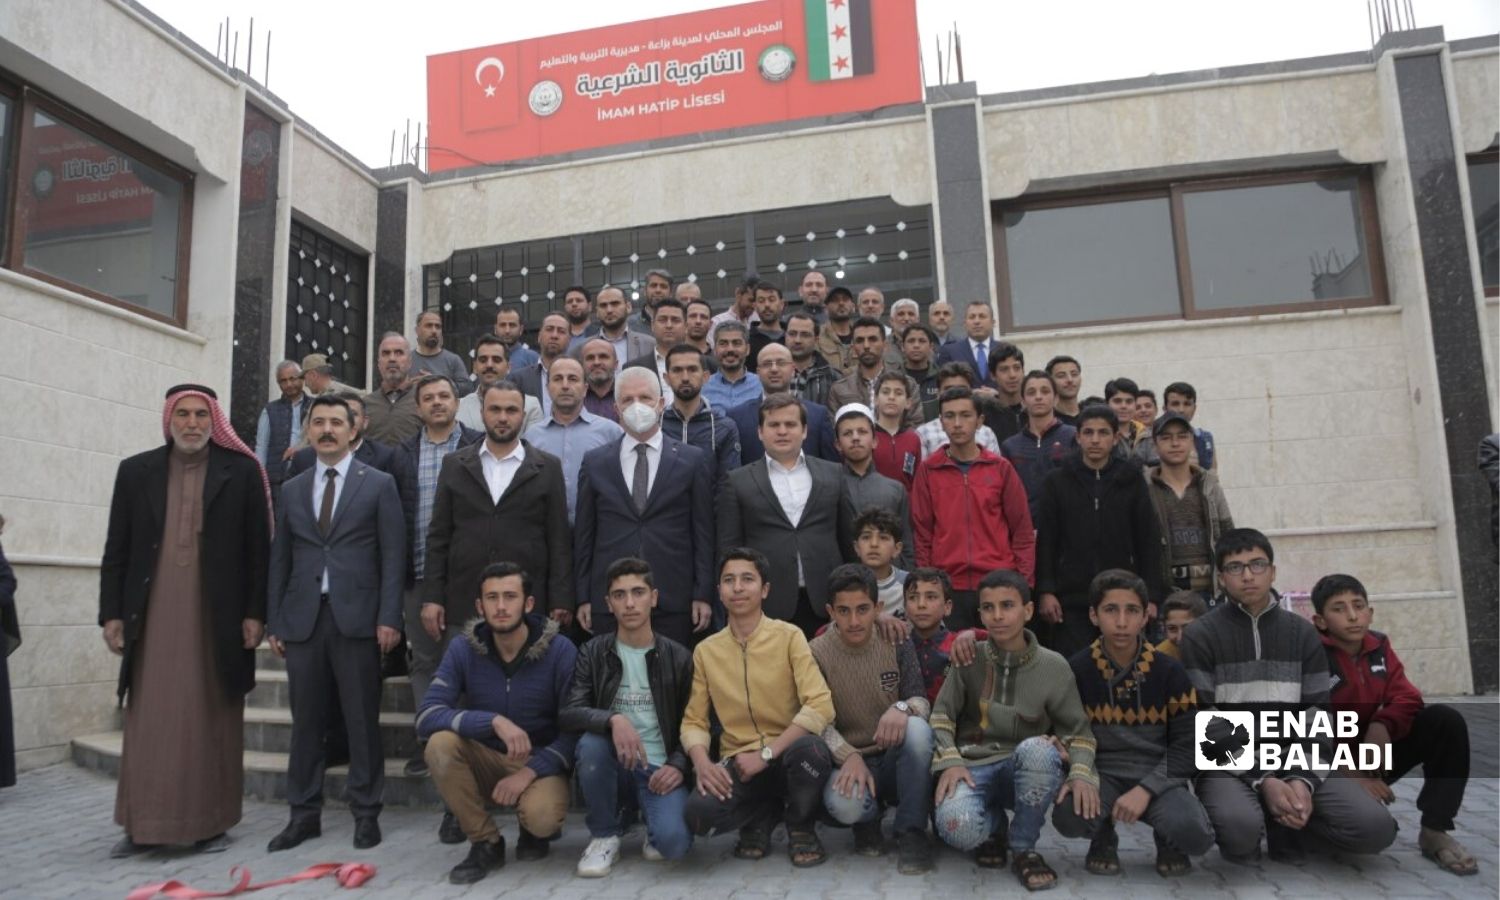 شخصيات محلية وتركية أمام مبنى "الثانوية الشرعية" في مدينة بزاعة بريف حلب - 19 نيسان 2022 (عنب بلدي / سراج محمد)